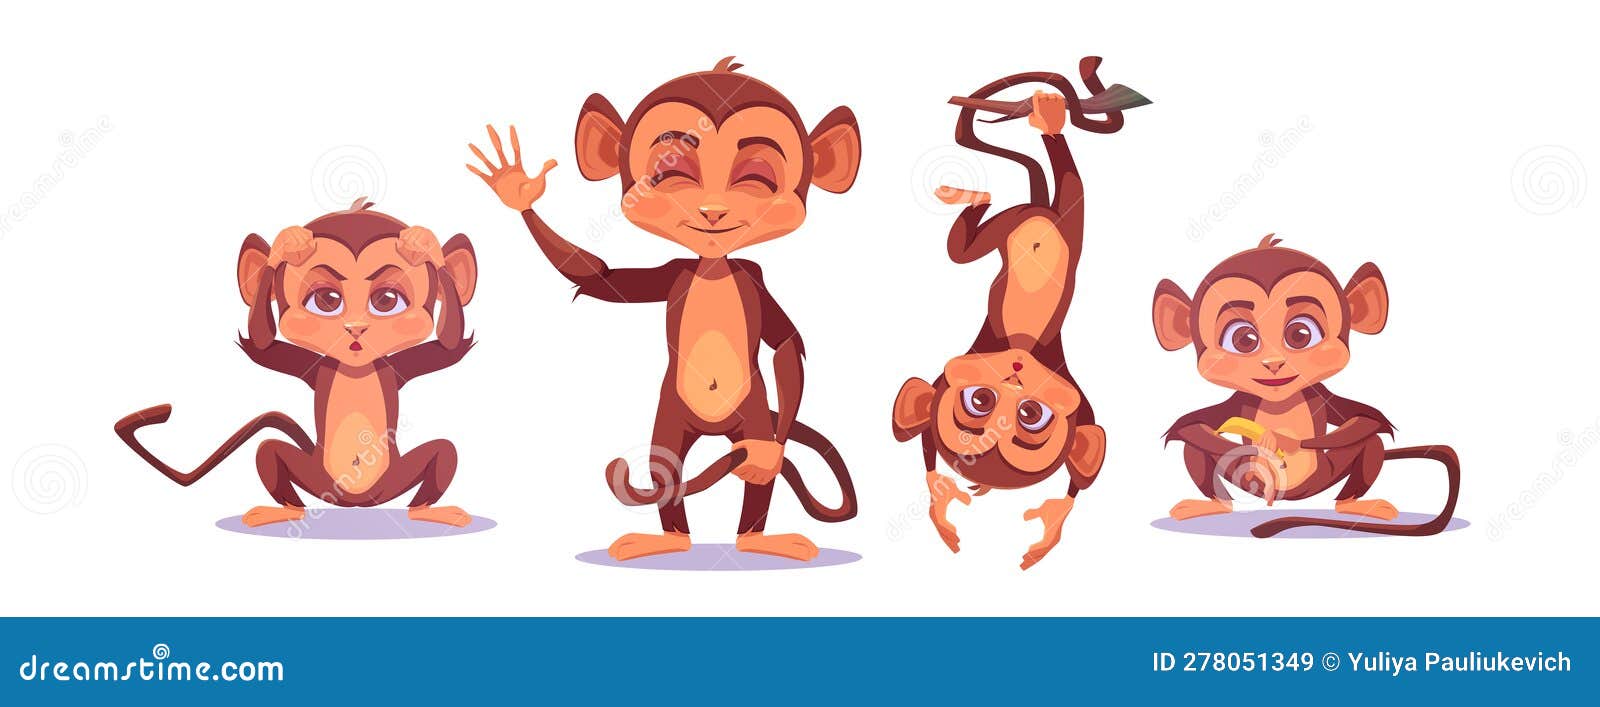 Ilustração em vetor macaco bebê fofo. personagem de desenho